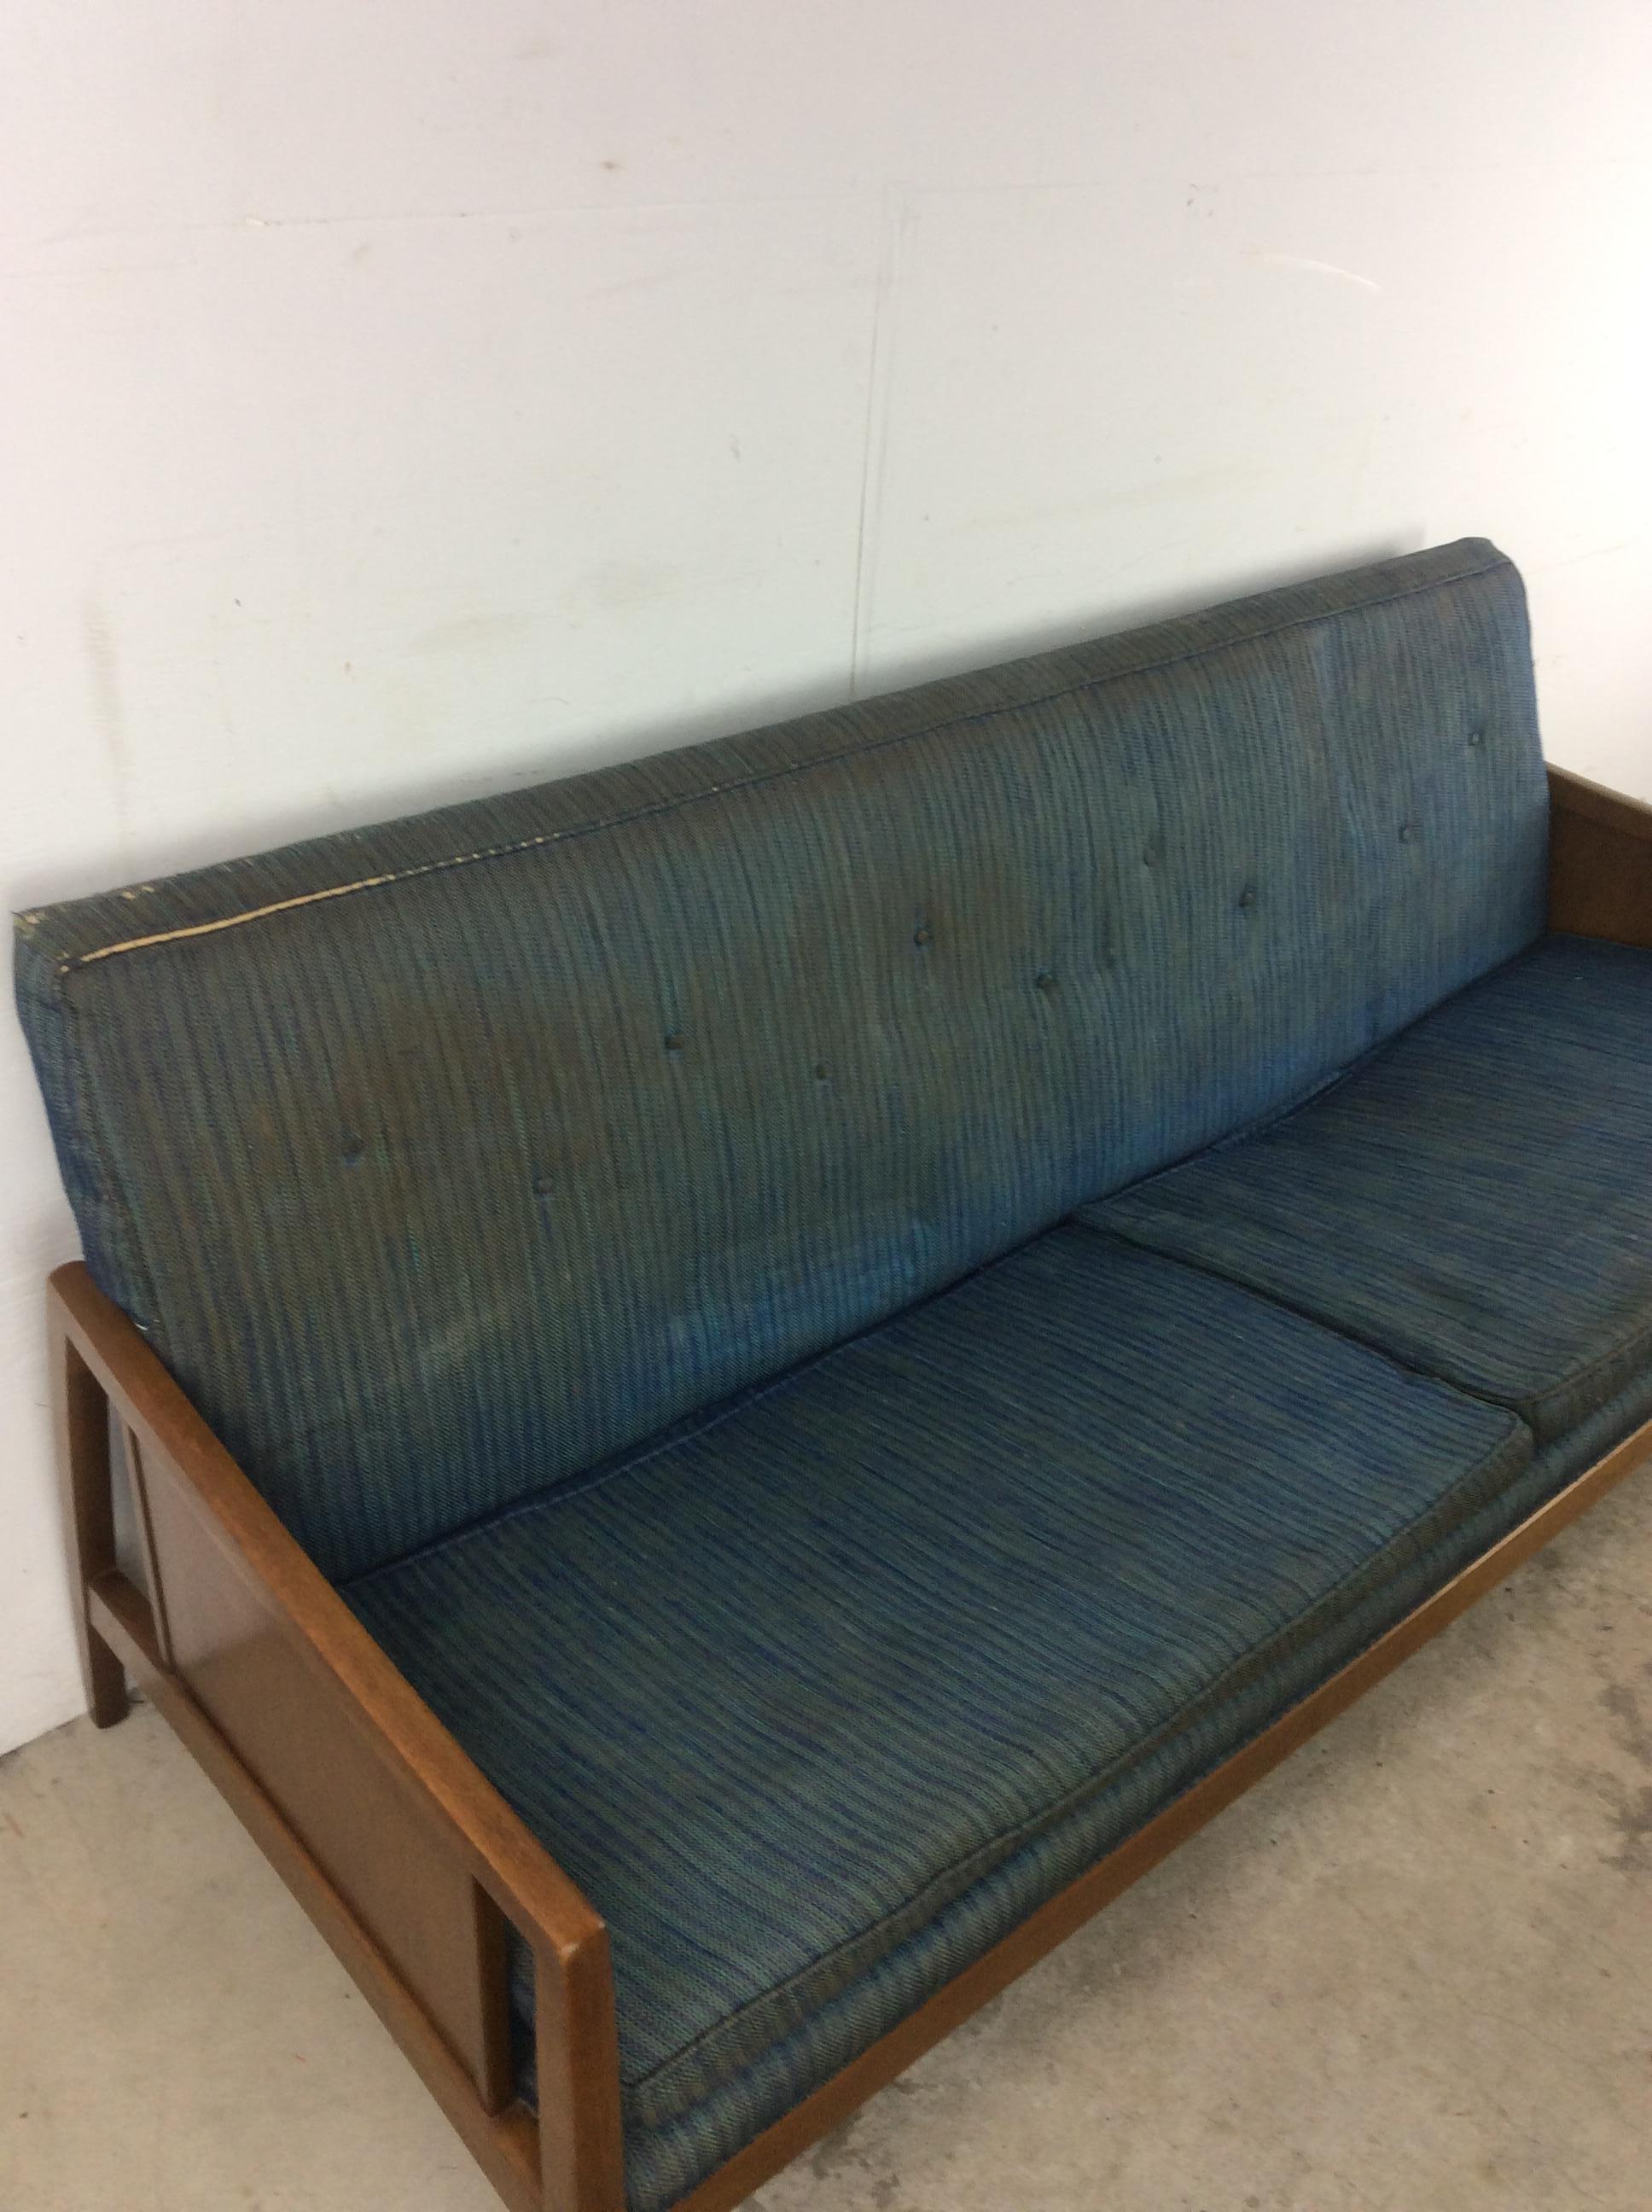 Dieses Mid-Century Modern Sofa von Drexel Furniture zeichnet sich durch eine Hartholzkonstruktion, eine originale Walnussoberfläche, eine blaue Vintage-Polsterung mit abnehmbaren Kissen, wunderschön gearbeitete Armlehnen und konisch zulaufende Beine